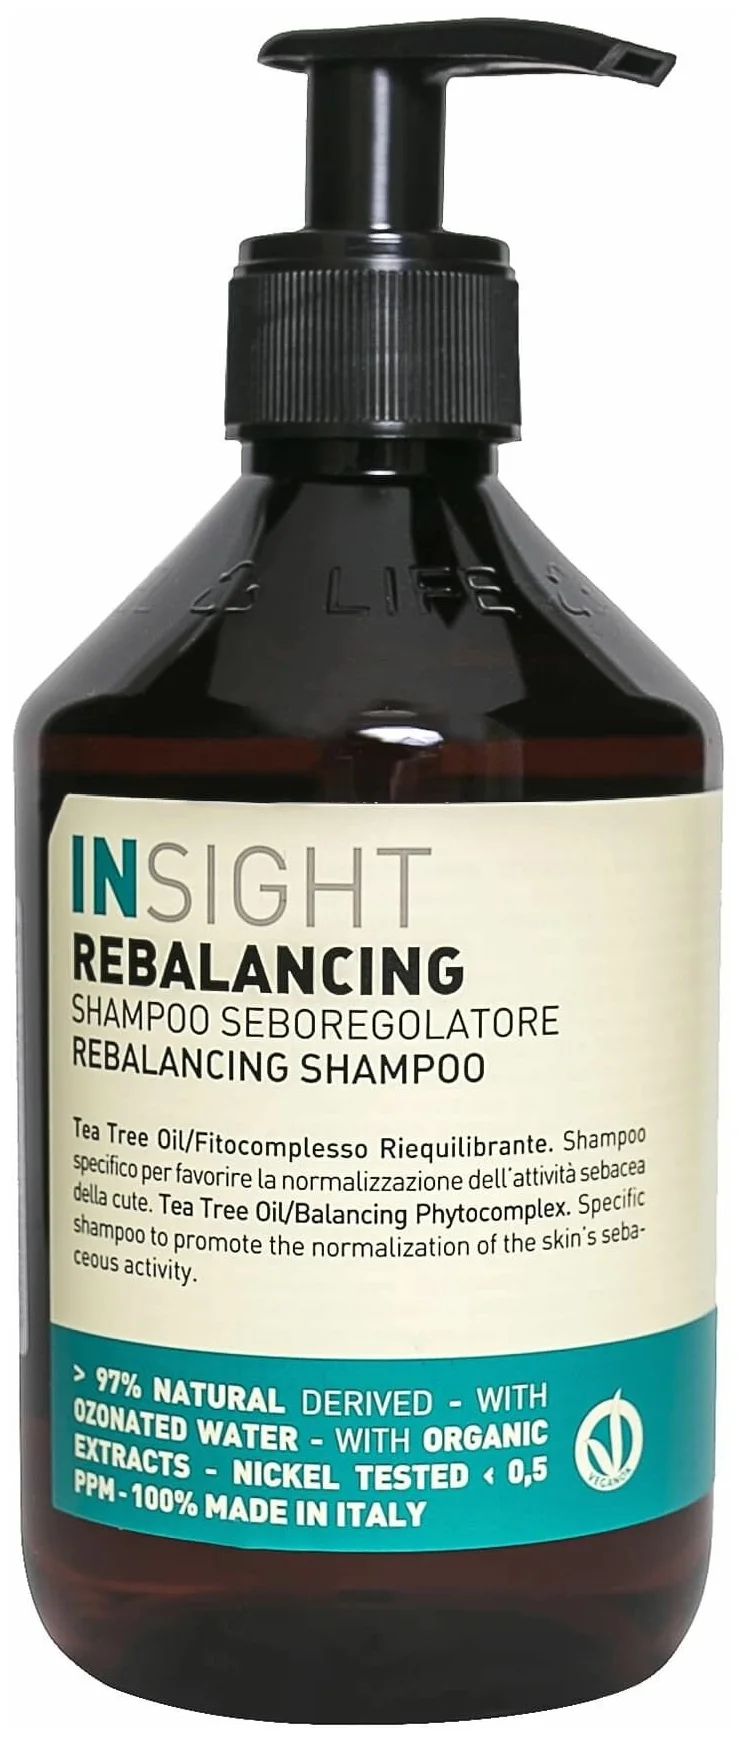 Шампунь для волос Insight Rebalancing Shampoo Seboregolatere Sebom Control Shampoo 400 мл шампунь для обновления а фиолетовых оттенков волос refresh violet lavender shampoo 44272 300 мл